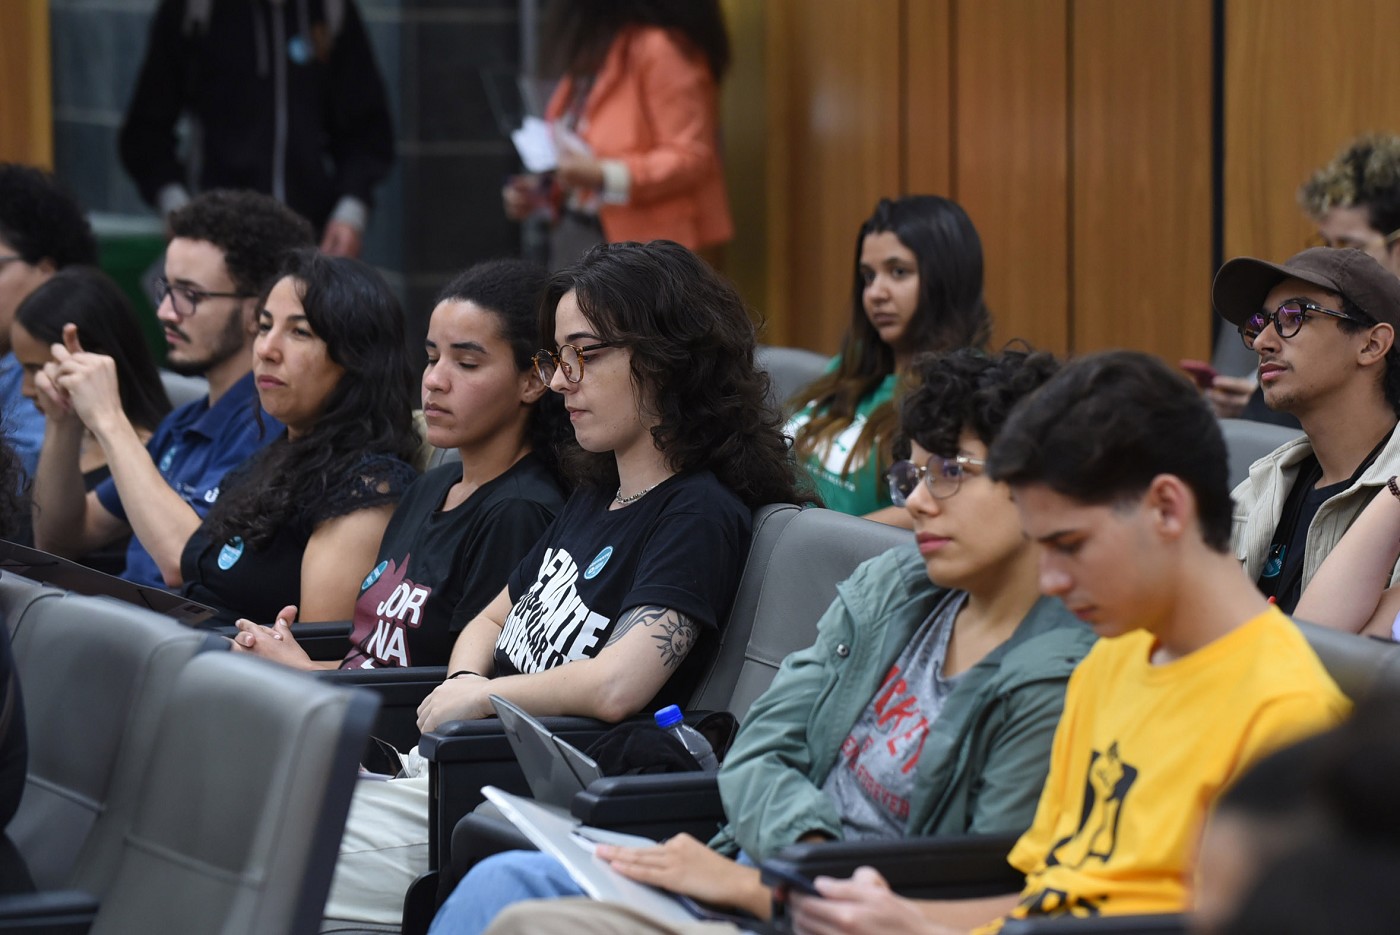 ALMG: Jovens pedem reformulação de assistência estudantil nas universidades